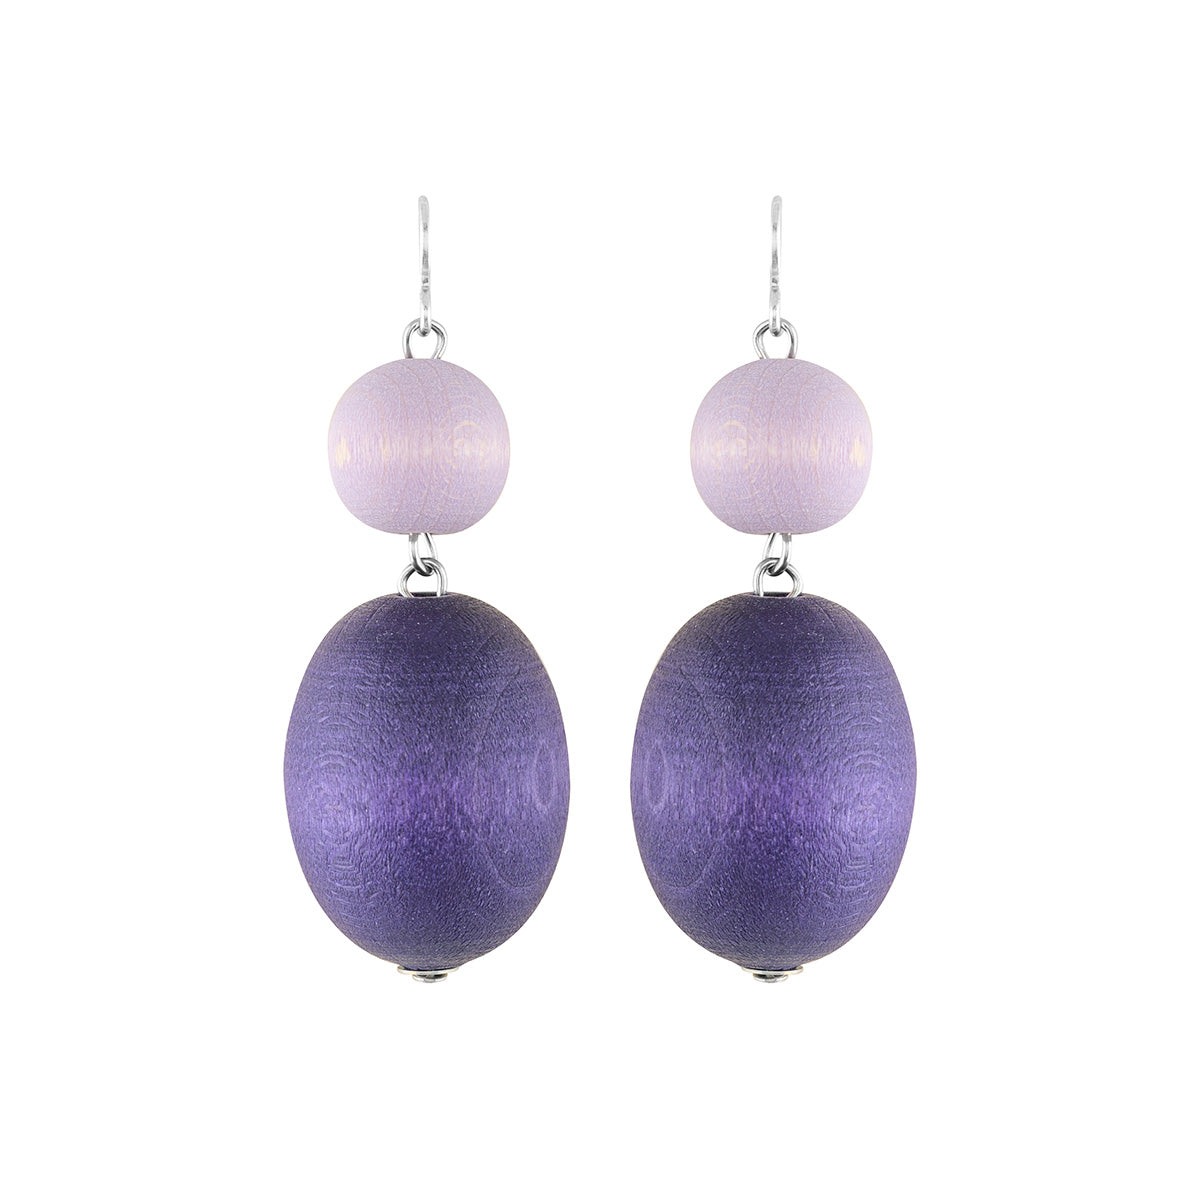 Taateli earrings, purple